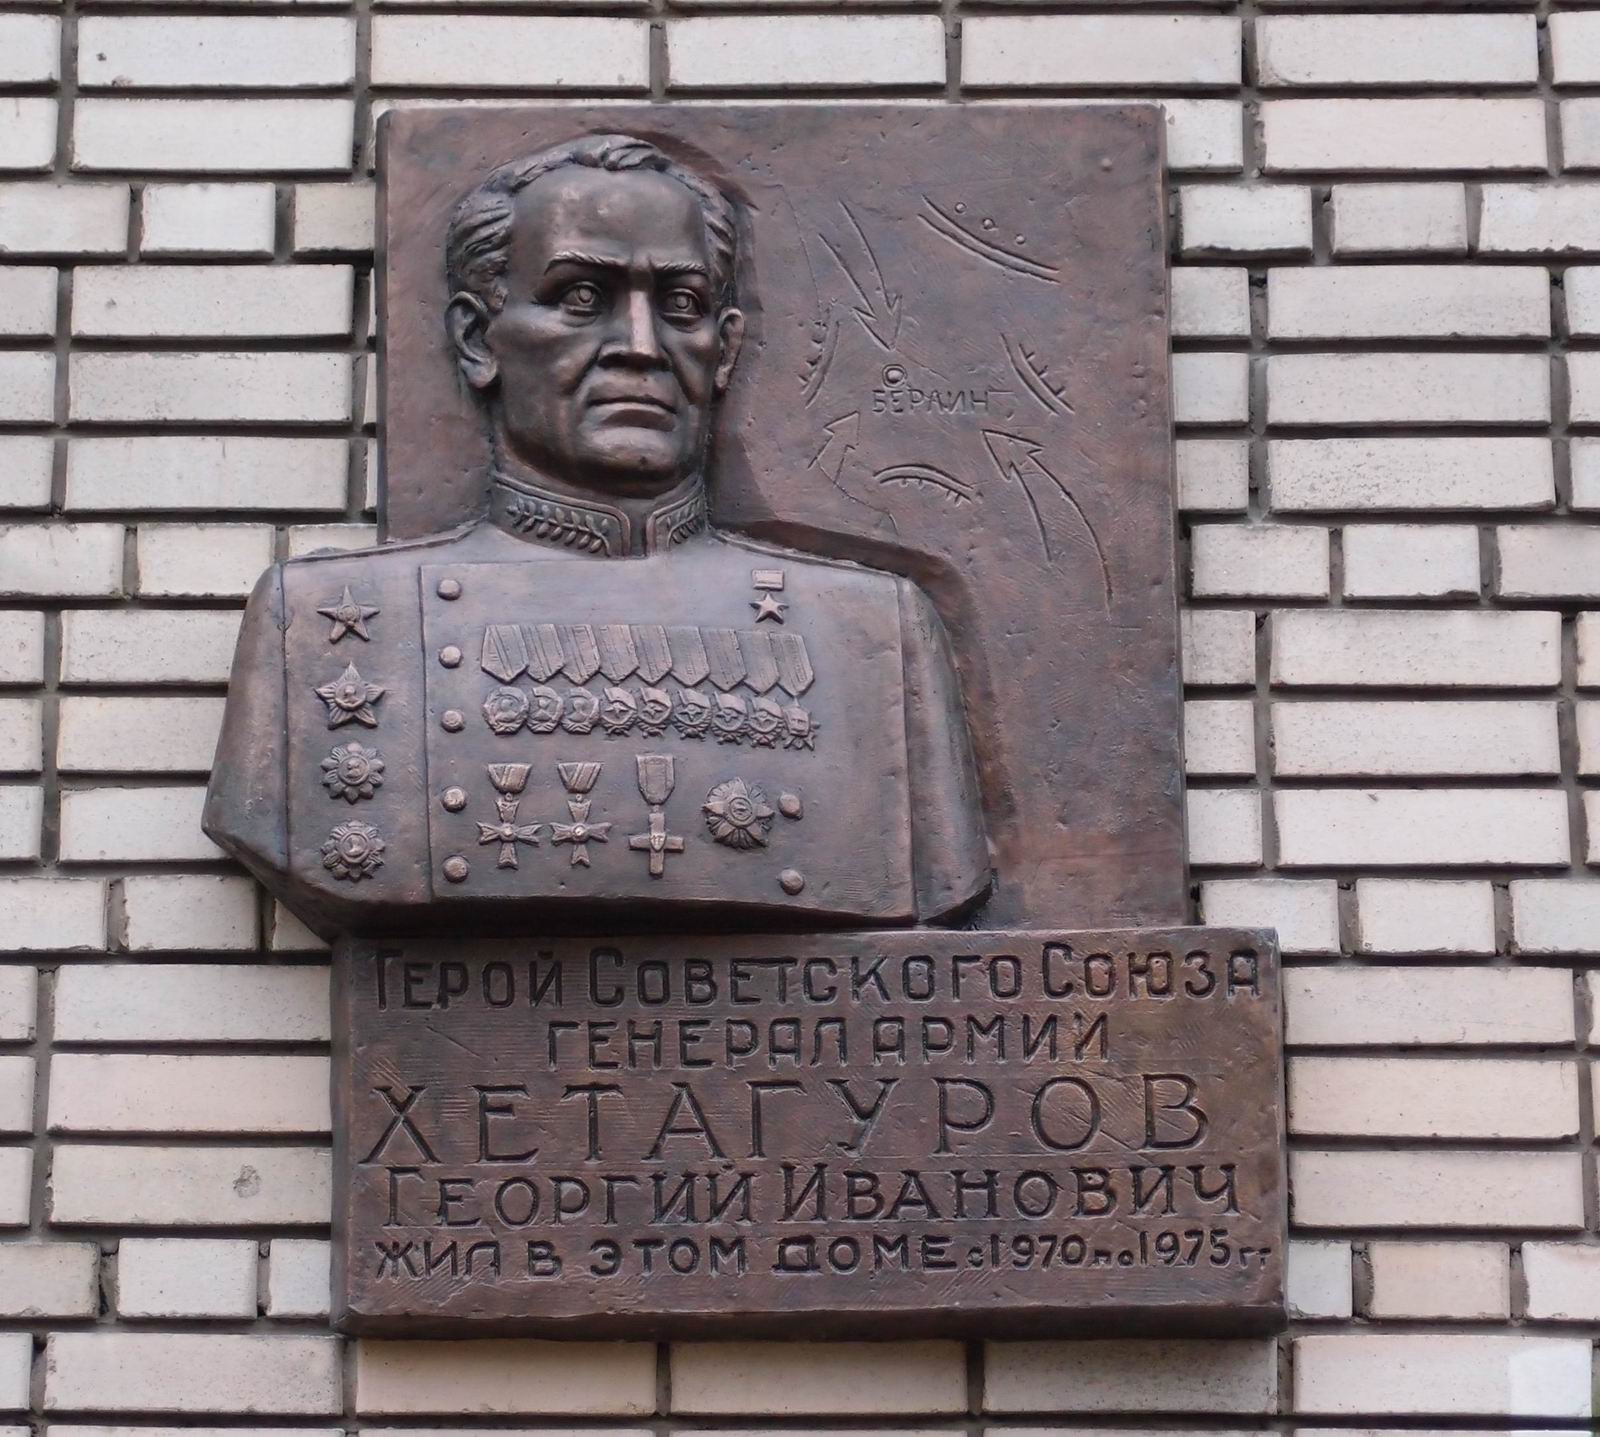 Мемориальная доска Хетагурову Г.И. (1903-1975), ск. А.Дзбоев, в Большом Афанасьевском переулке, дом 25, открыта 28.12.2013.